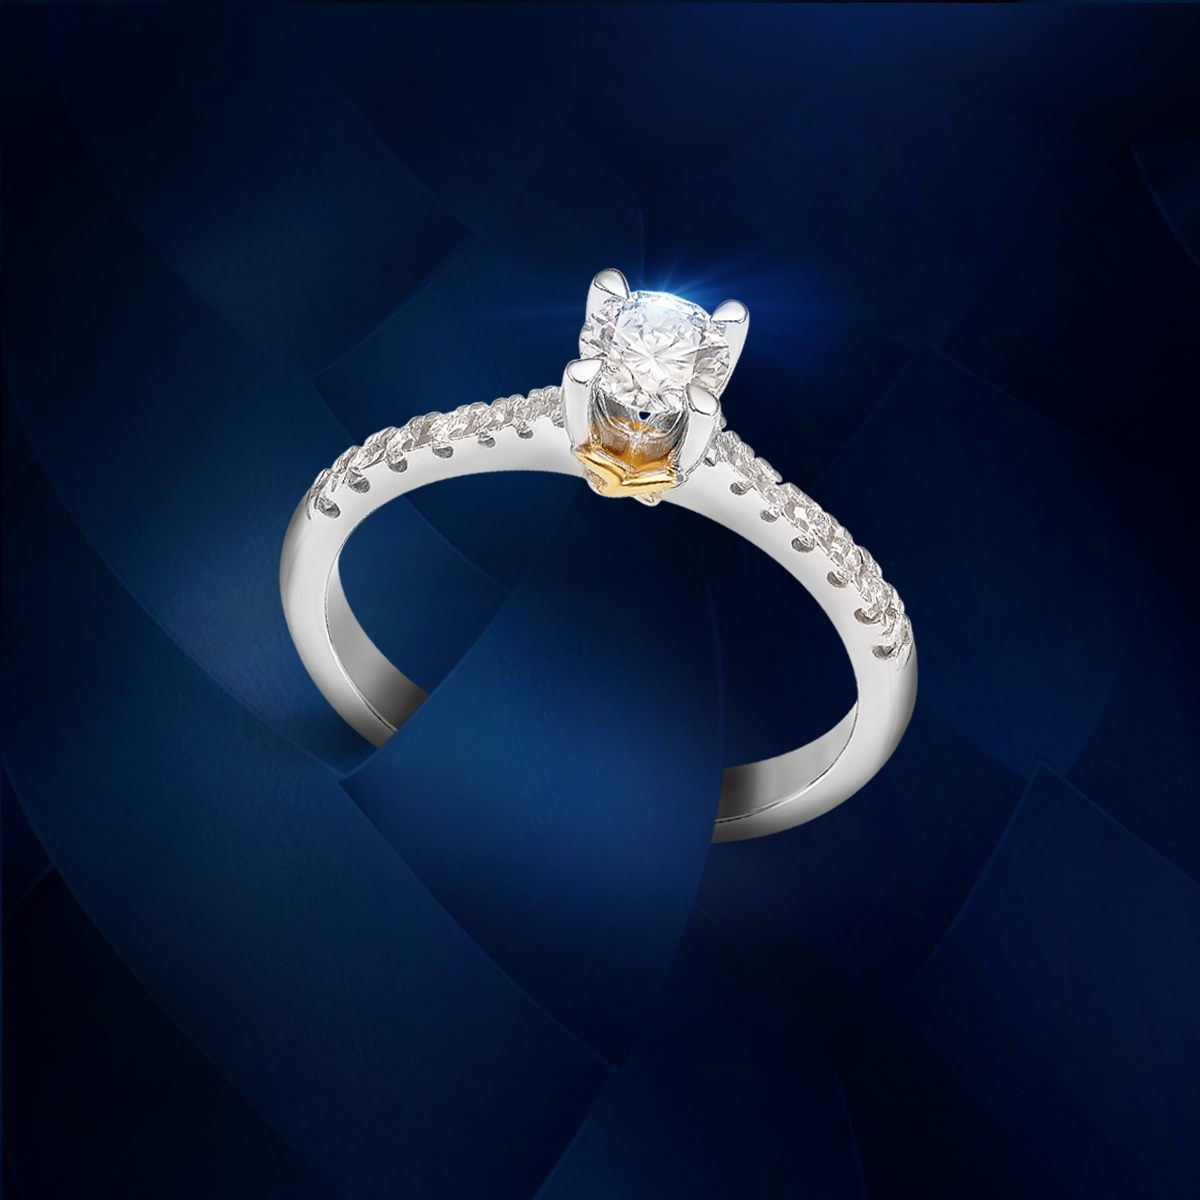 Kết hợp cùng chi tiết đan chéo, vẻ đẹp sang trọng, lấp lánh của kim cương tinh tuyển được khắc họa rõ nét trên dáng nhẫn Solitaire. Ảnh: PNJ